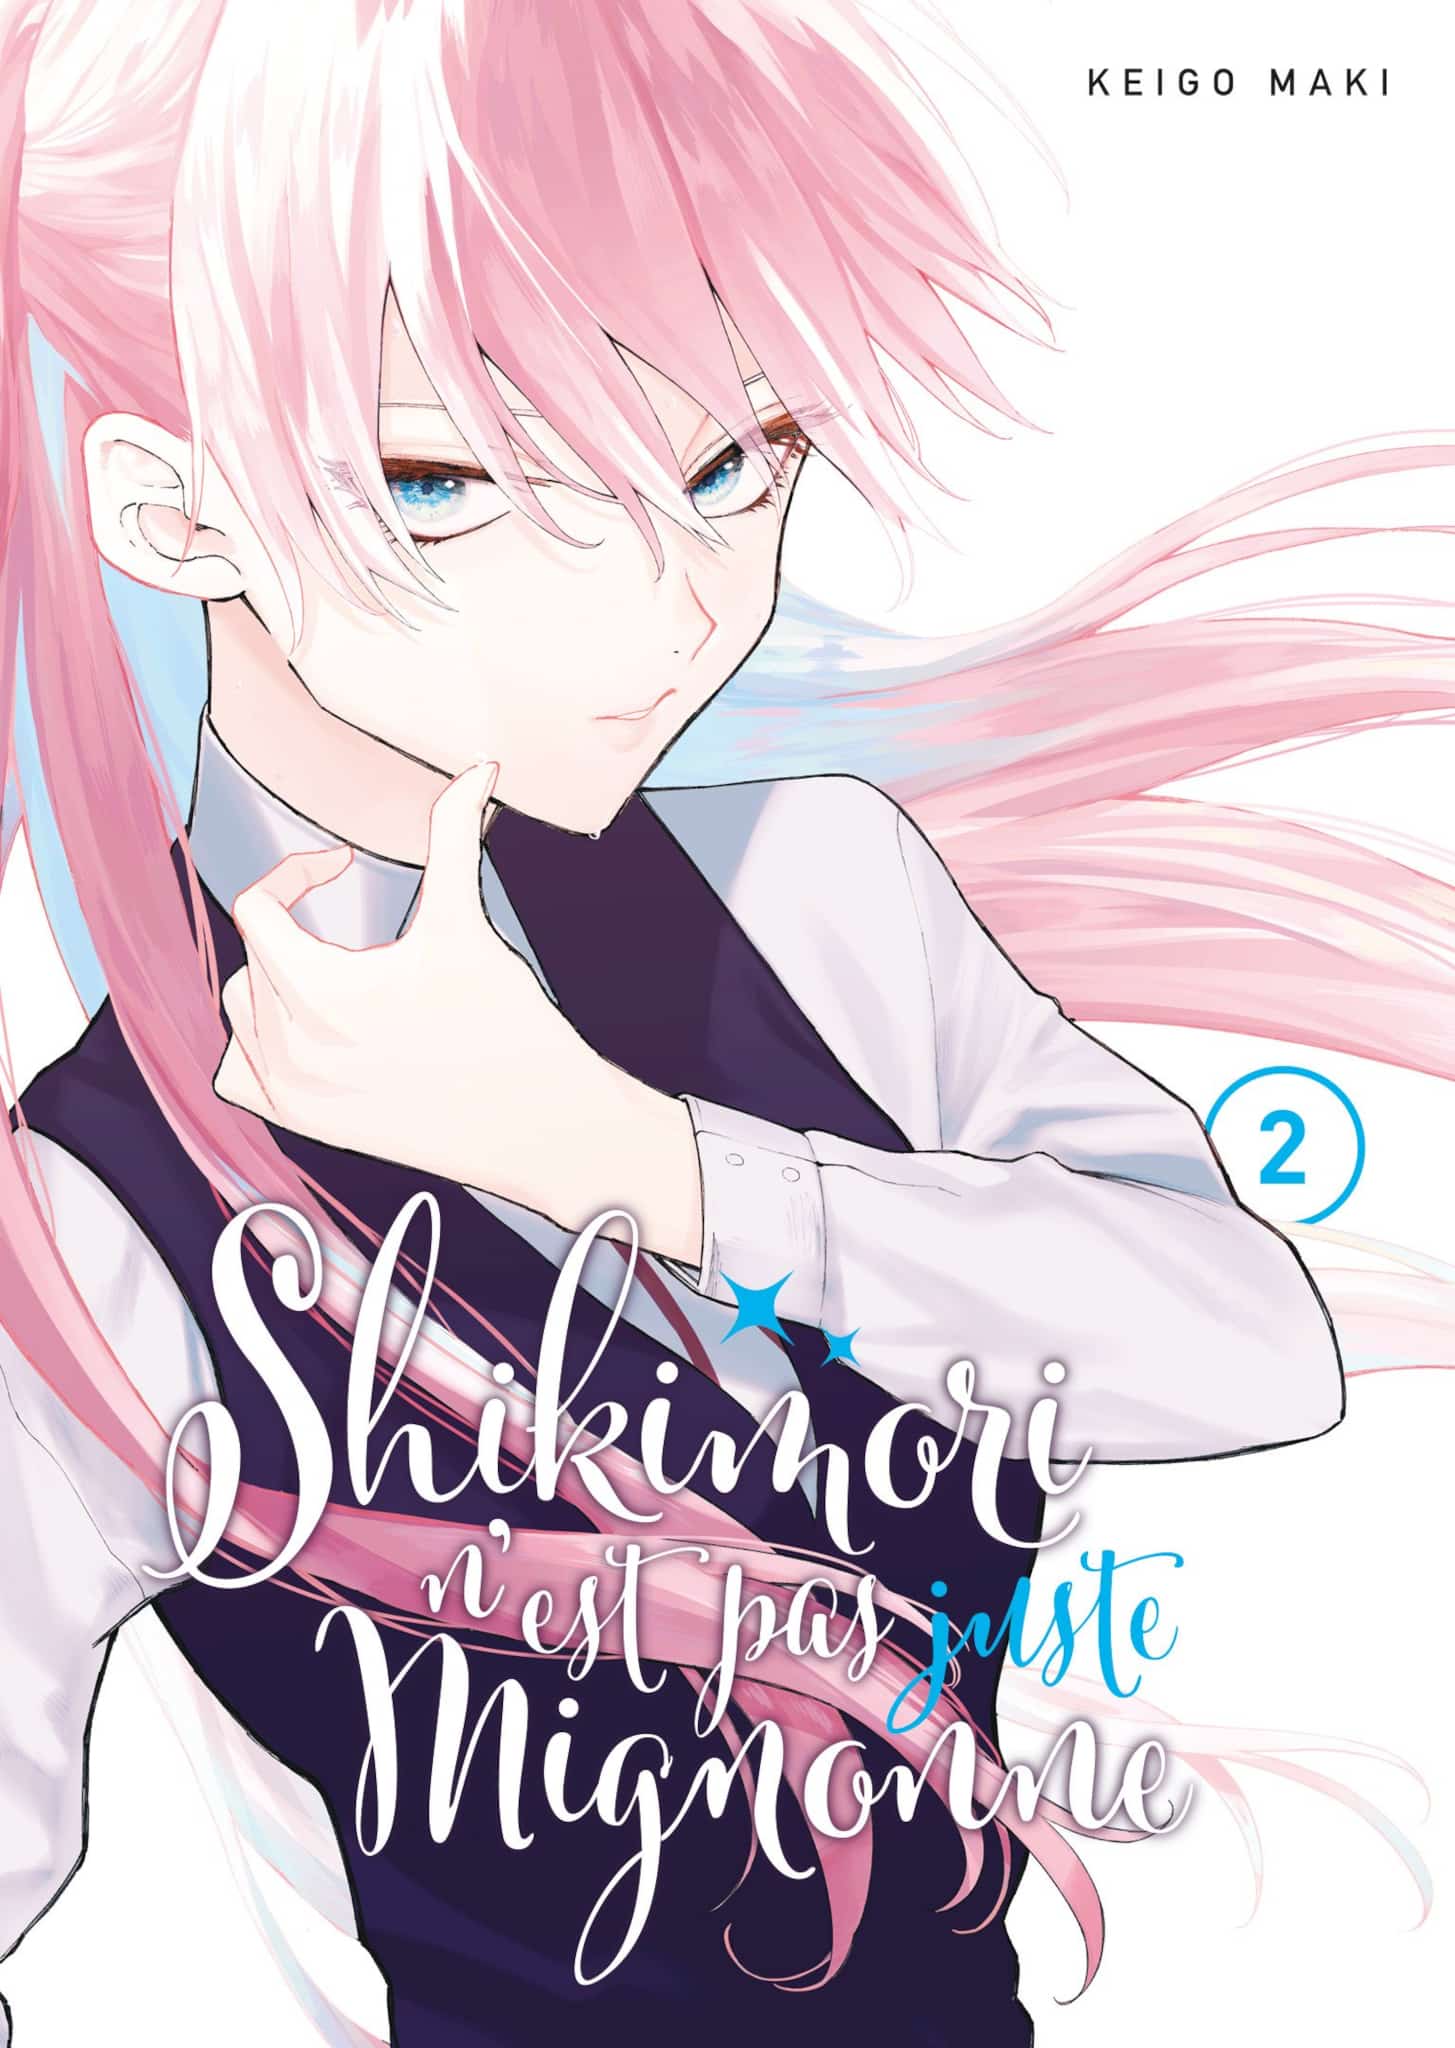 Tome 2 du manga Shikimori nest pas juste mignonne